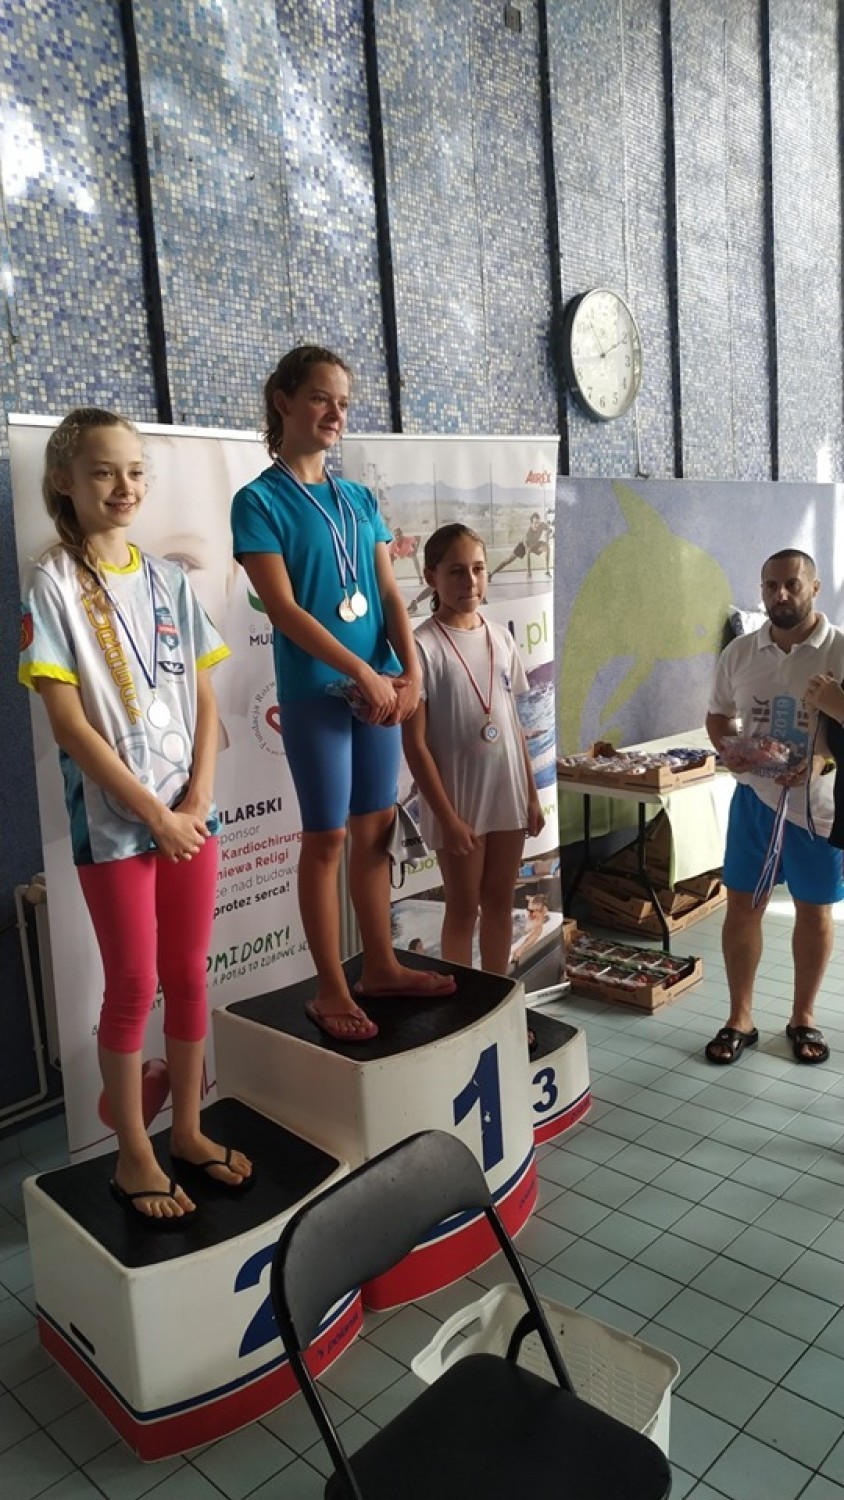 Sukces młodych pływaków z Wągrowca na zawodach w Inowrocławiu 